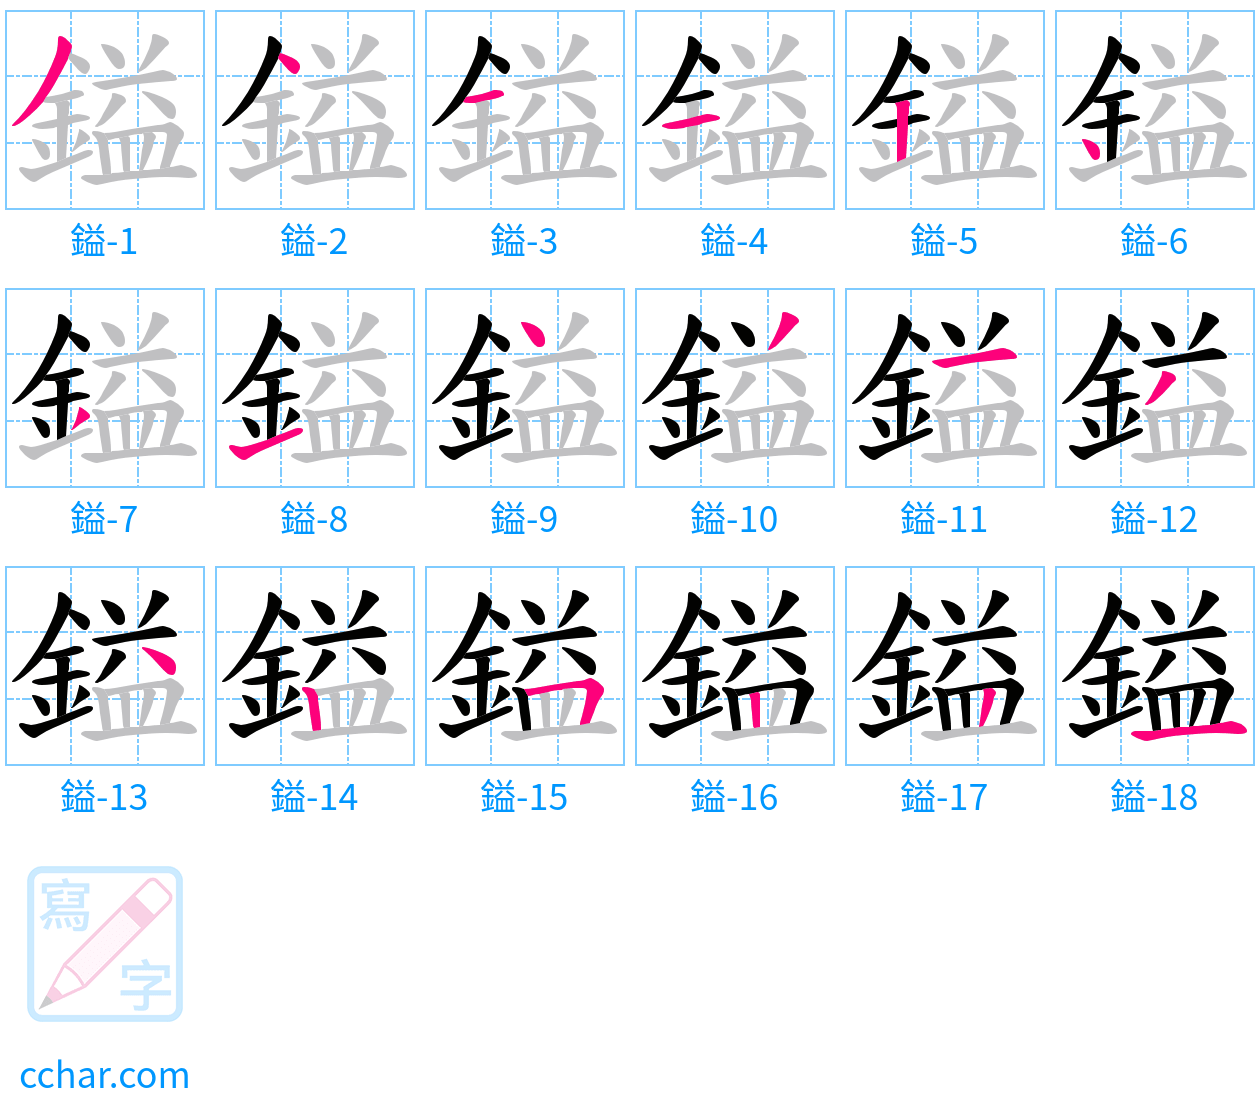 鎰 stroke order step-by-step diagram